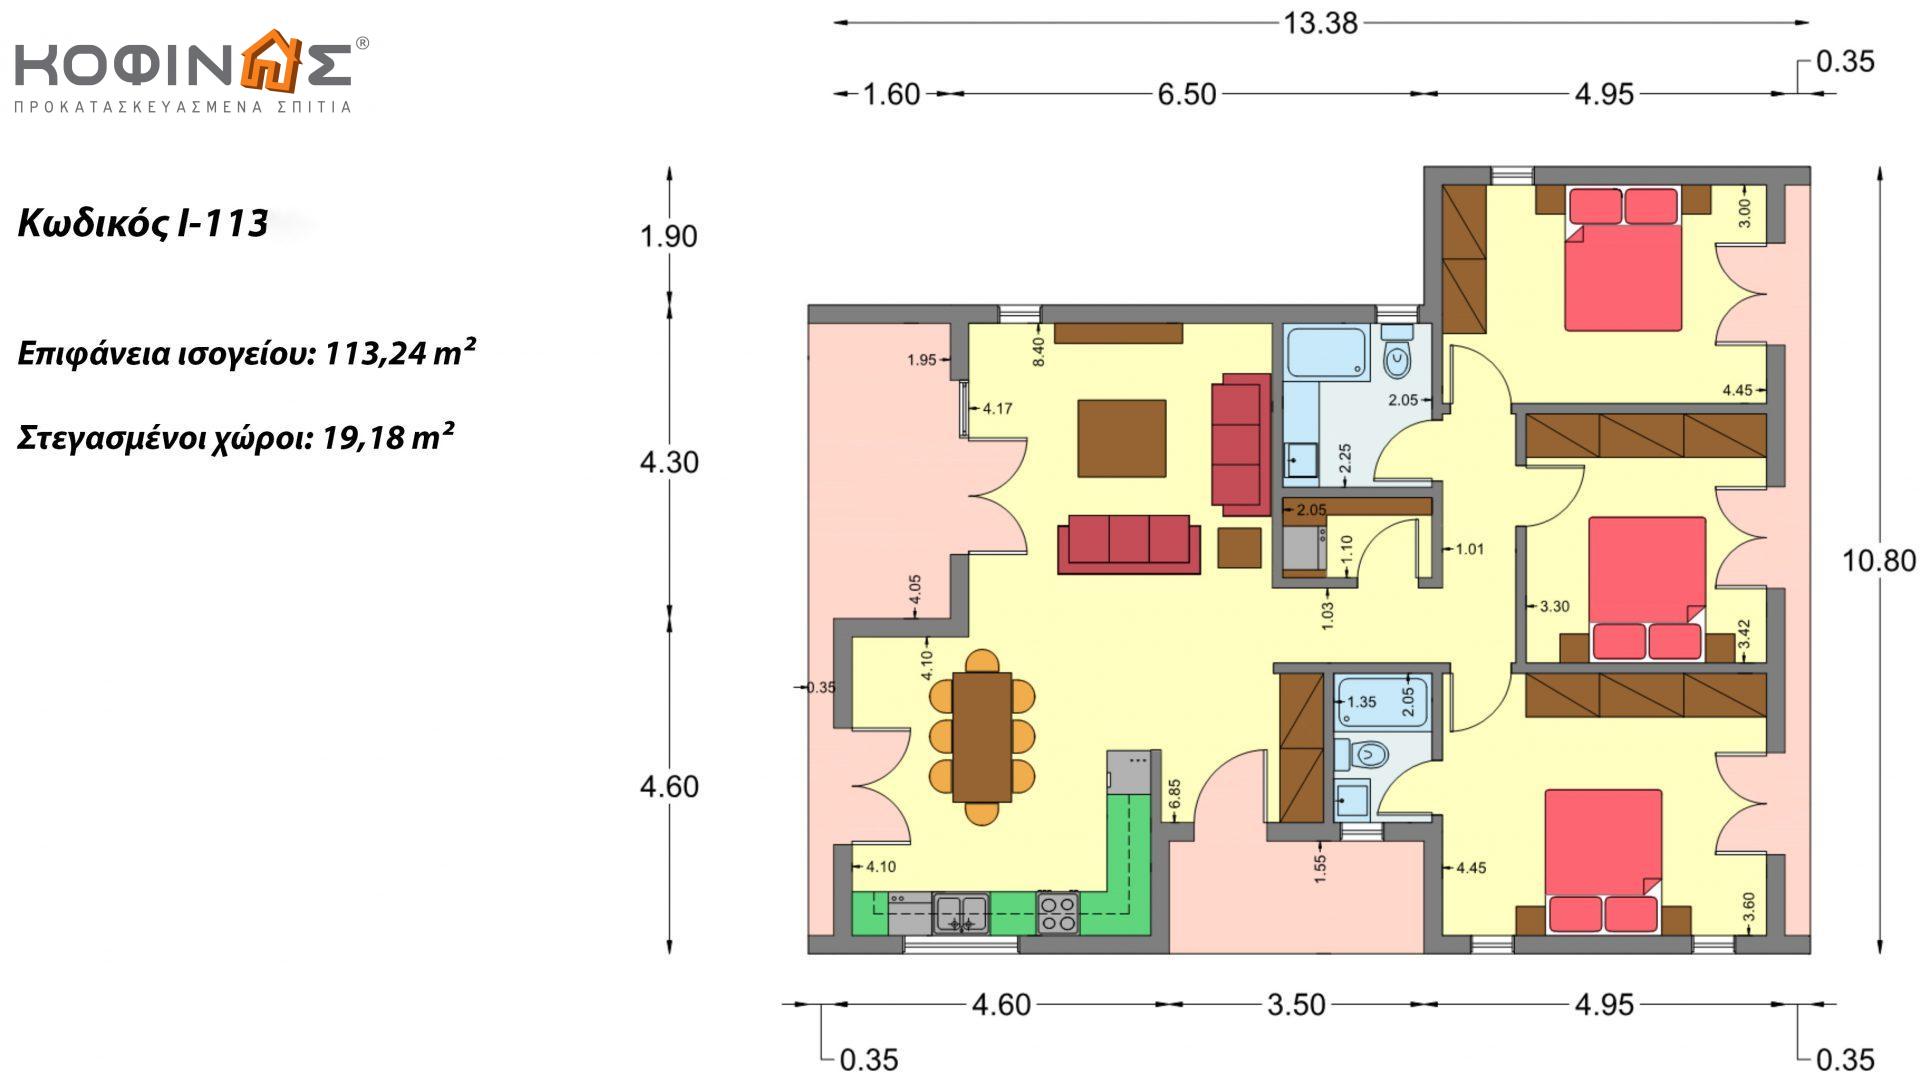 Ισόγεια Κατοικία I-113 συνολικής επιφάνειας 113,24 τ.μ., στεγασμένοι χώροι 19,18 τ.μ.